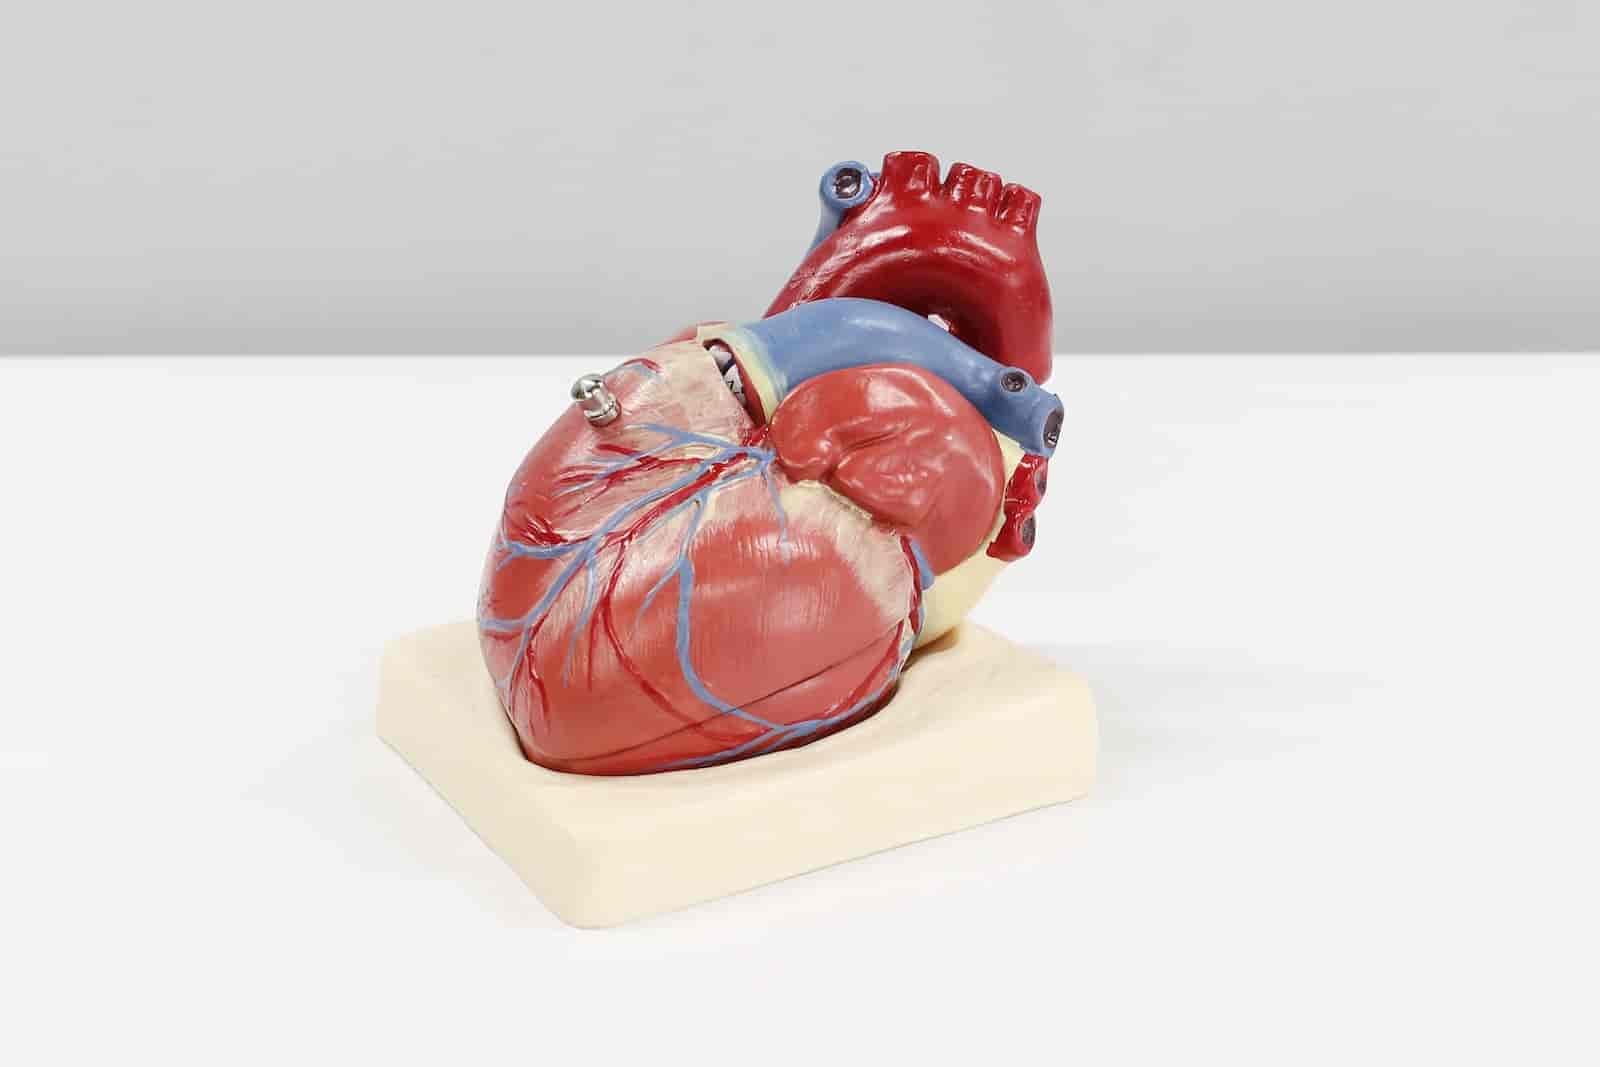 Łuk aorty miażdżycowo wysycony – co to znaczy